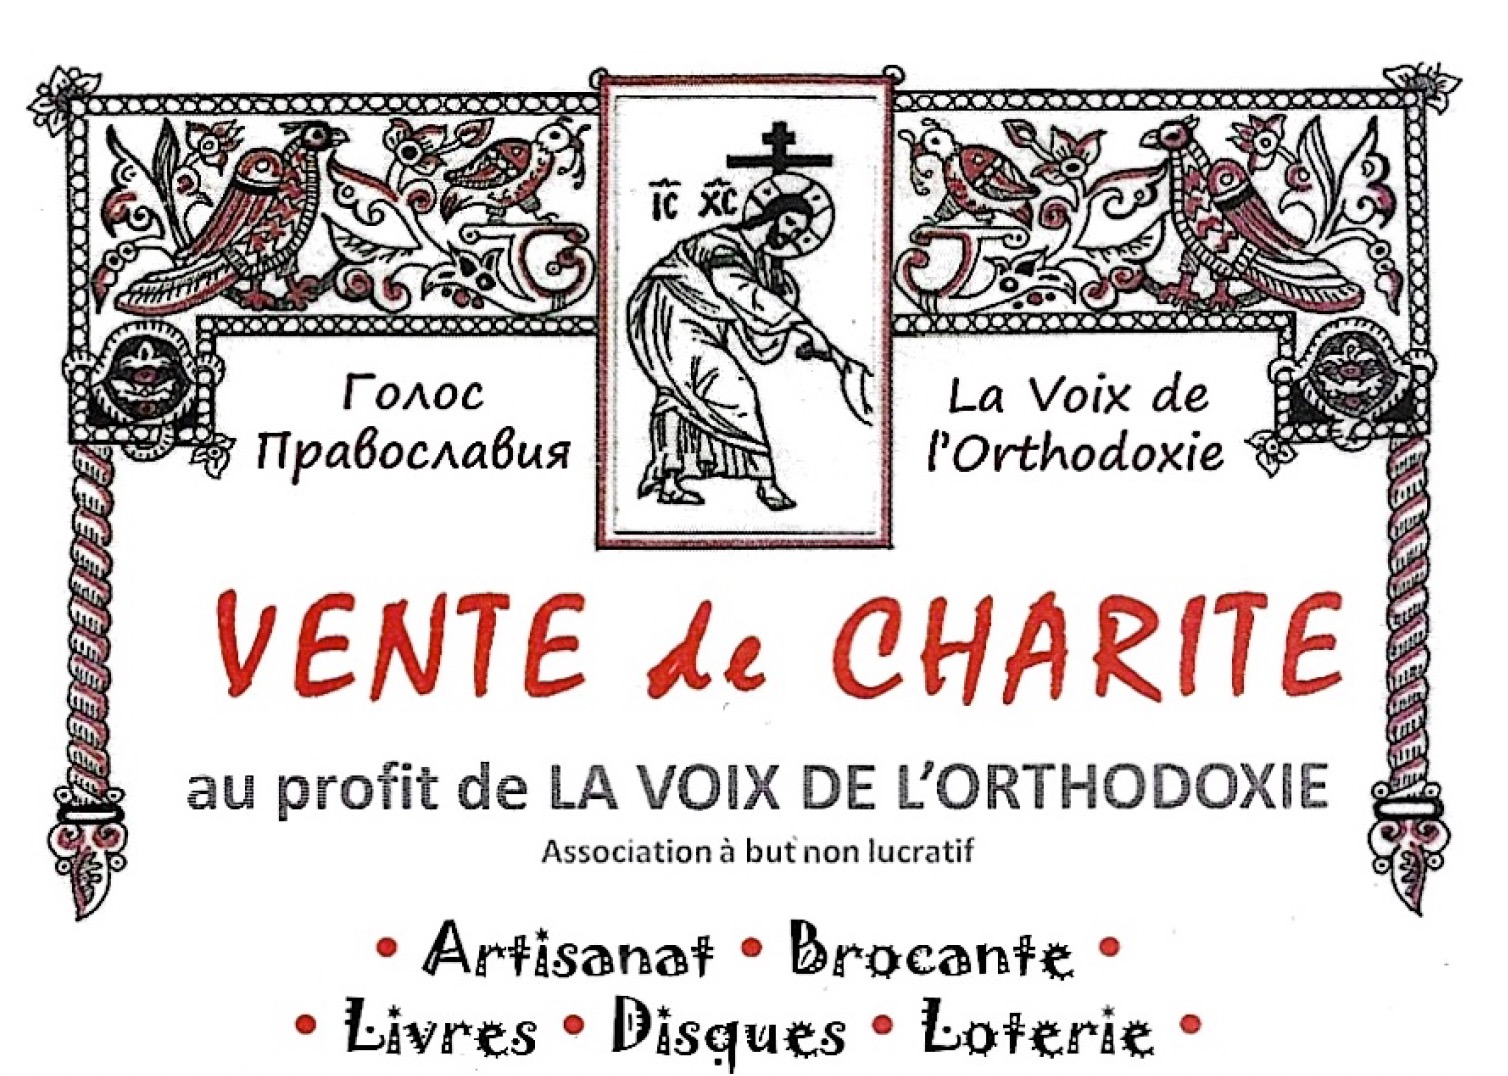 Vente de charité au profit de la « voix de l’orthodoxie »